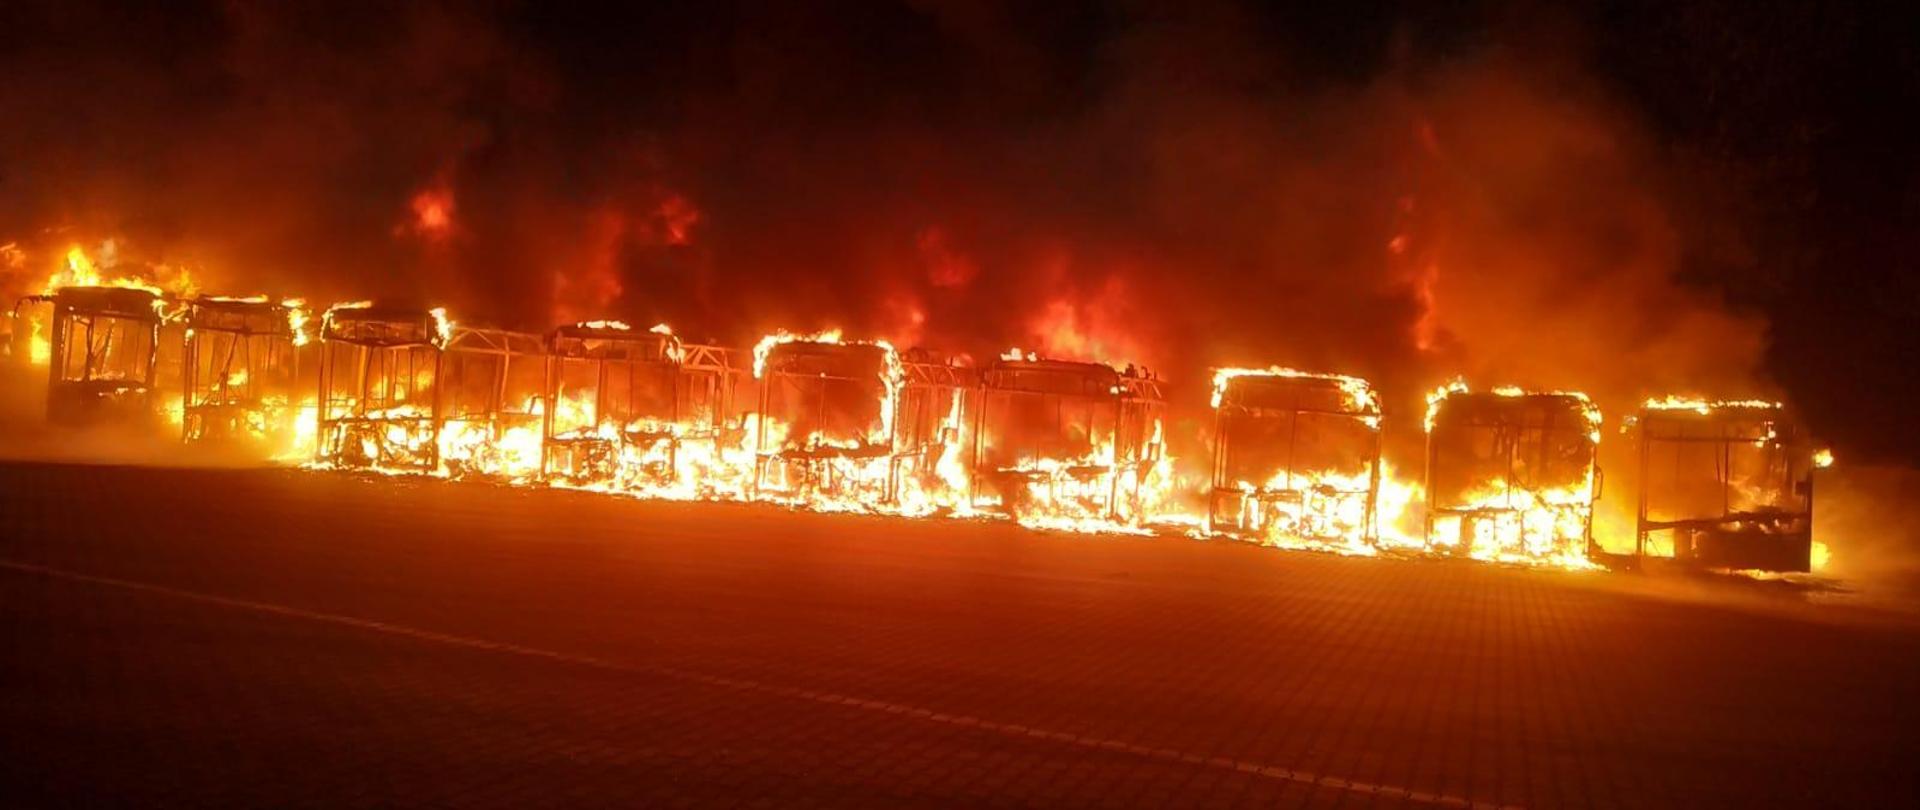 Na zdjęciu widoczne dziewięć autobusów objętych płomieniami